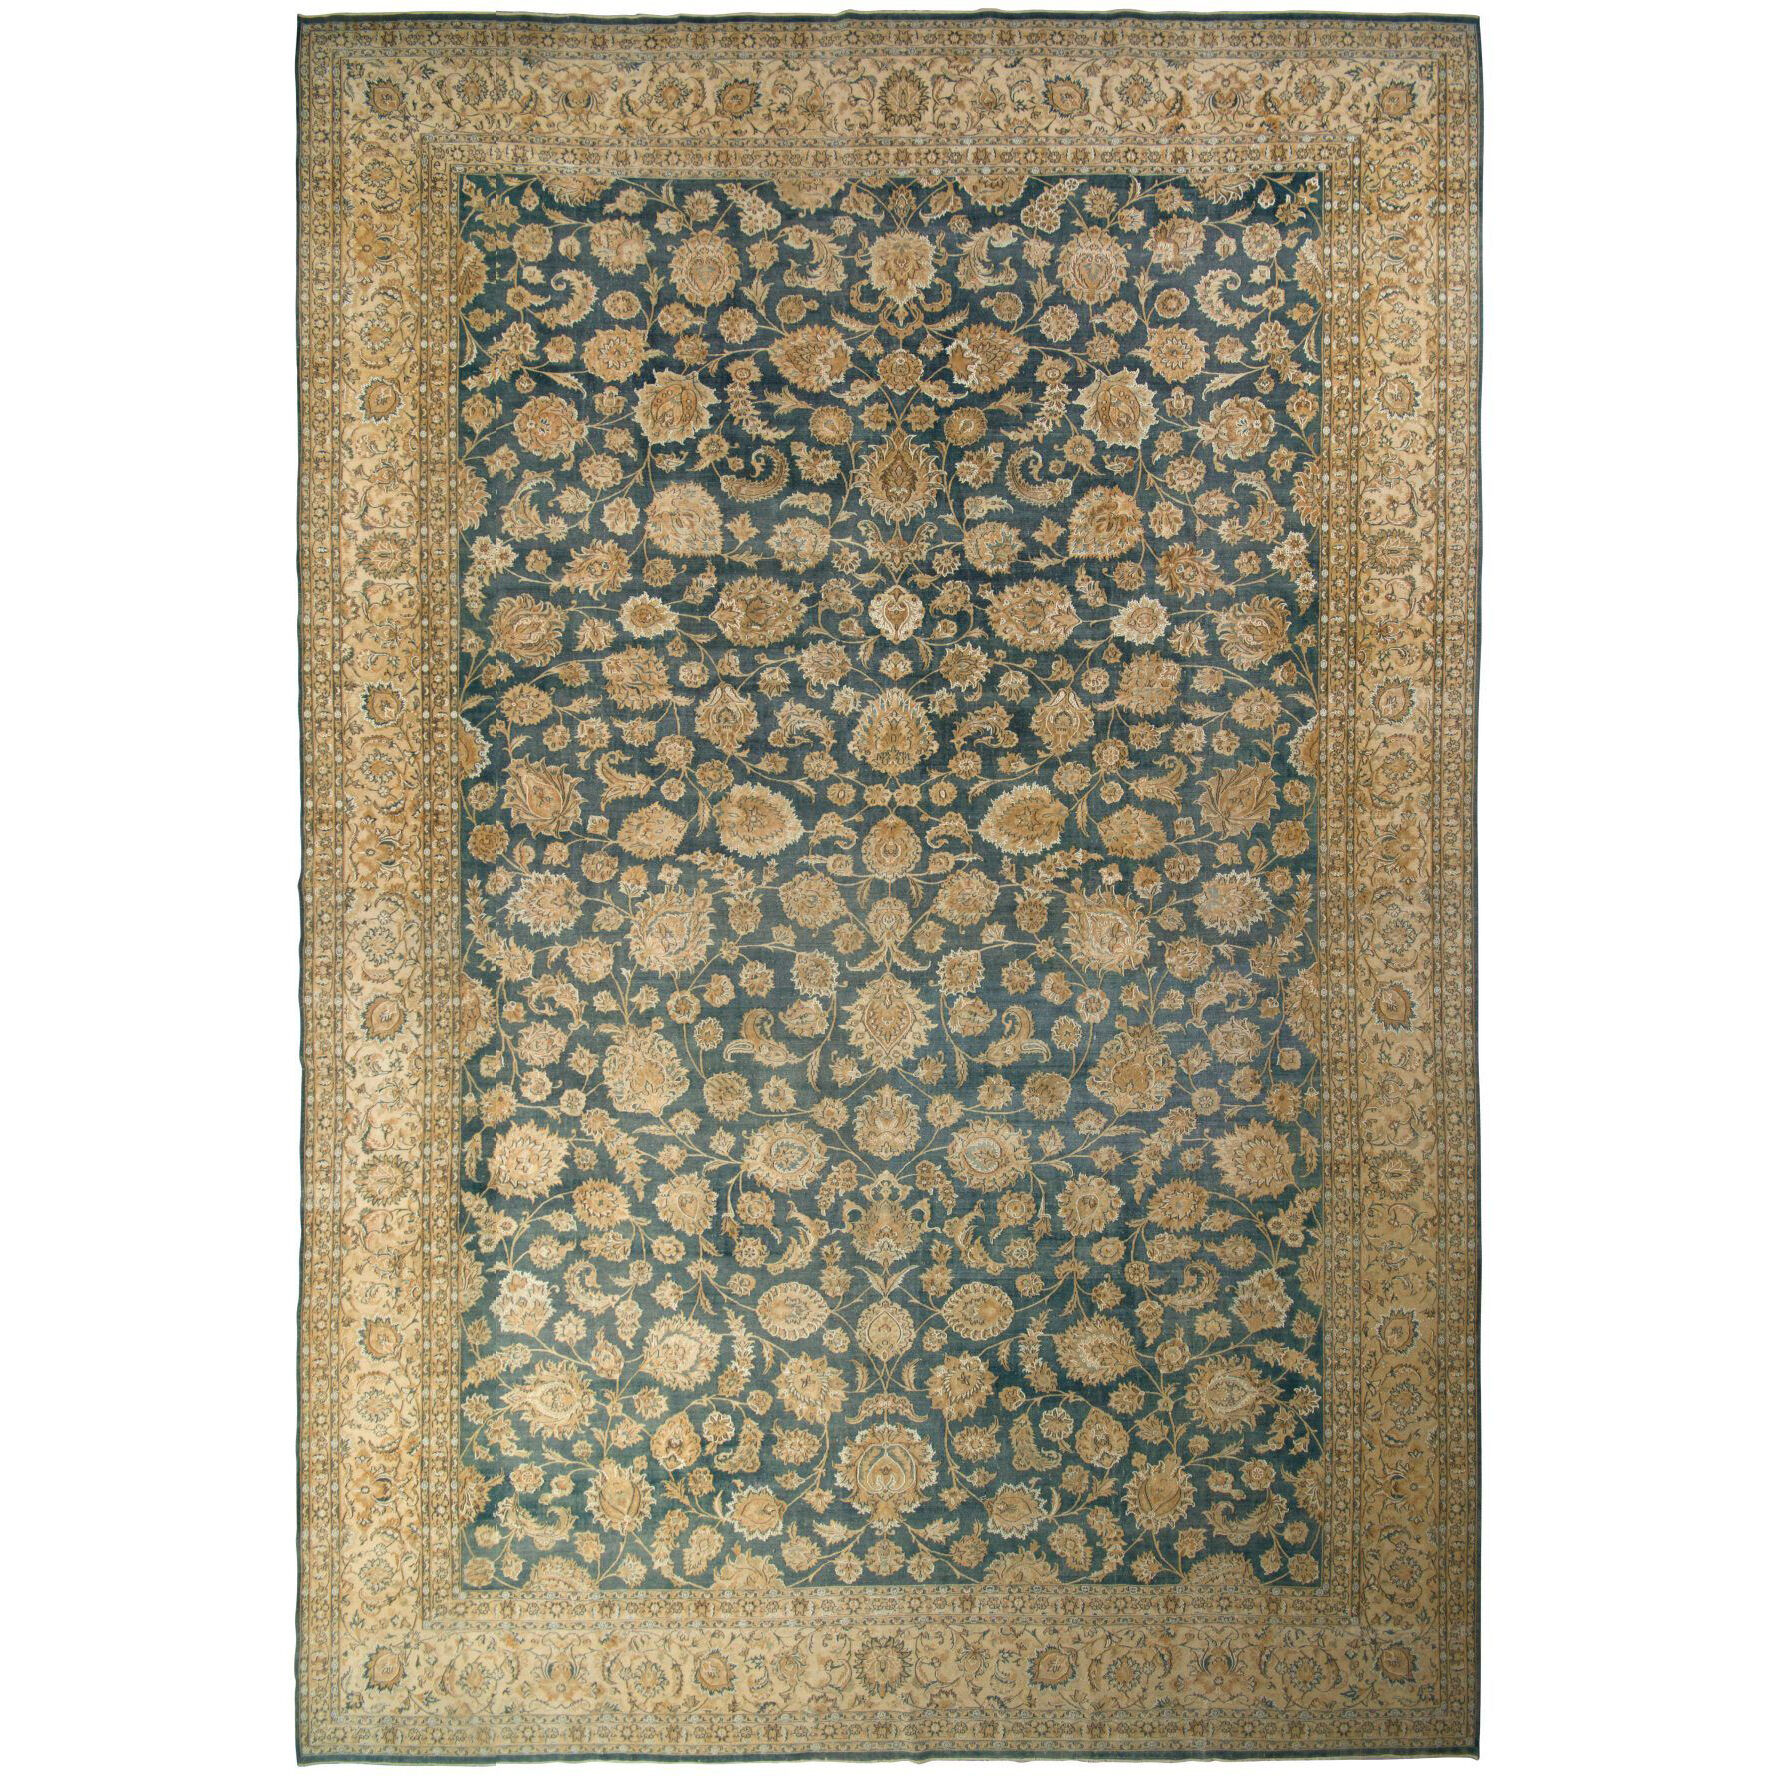 A circa 1900 Tabriz Persian rug from Rug & Kilim – Effect Magazine